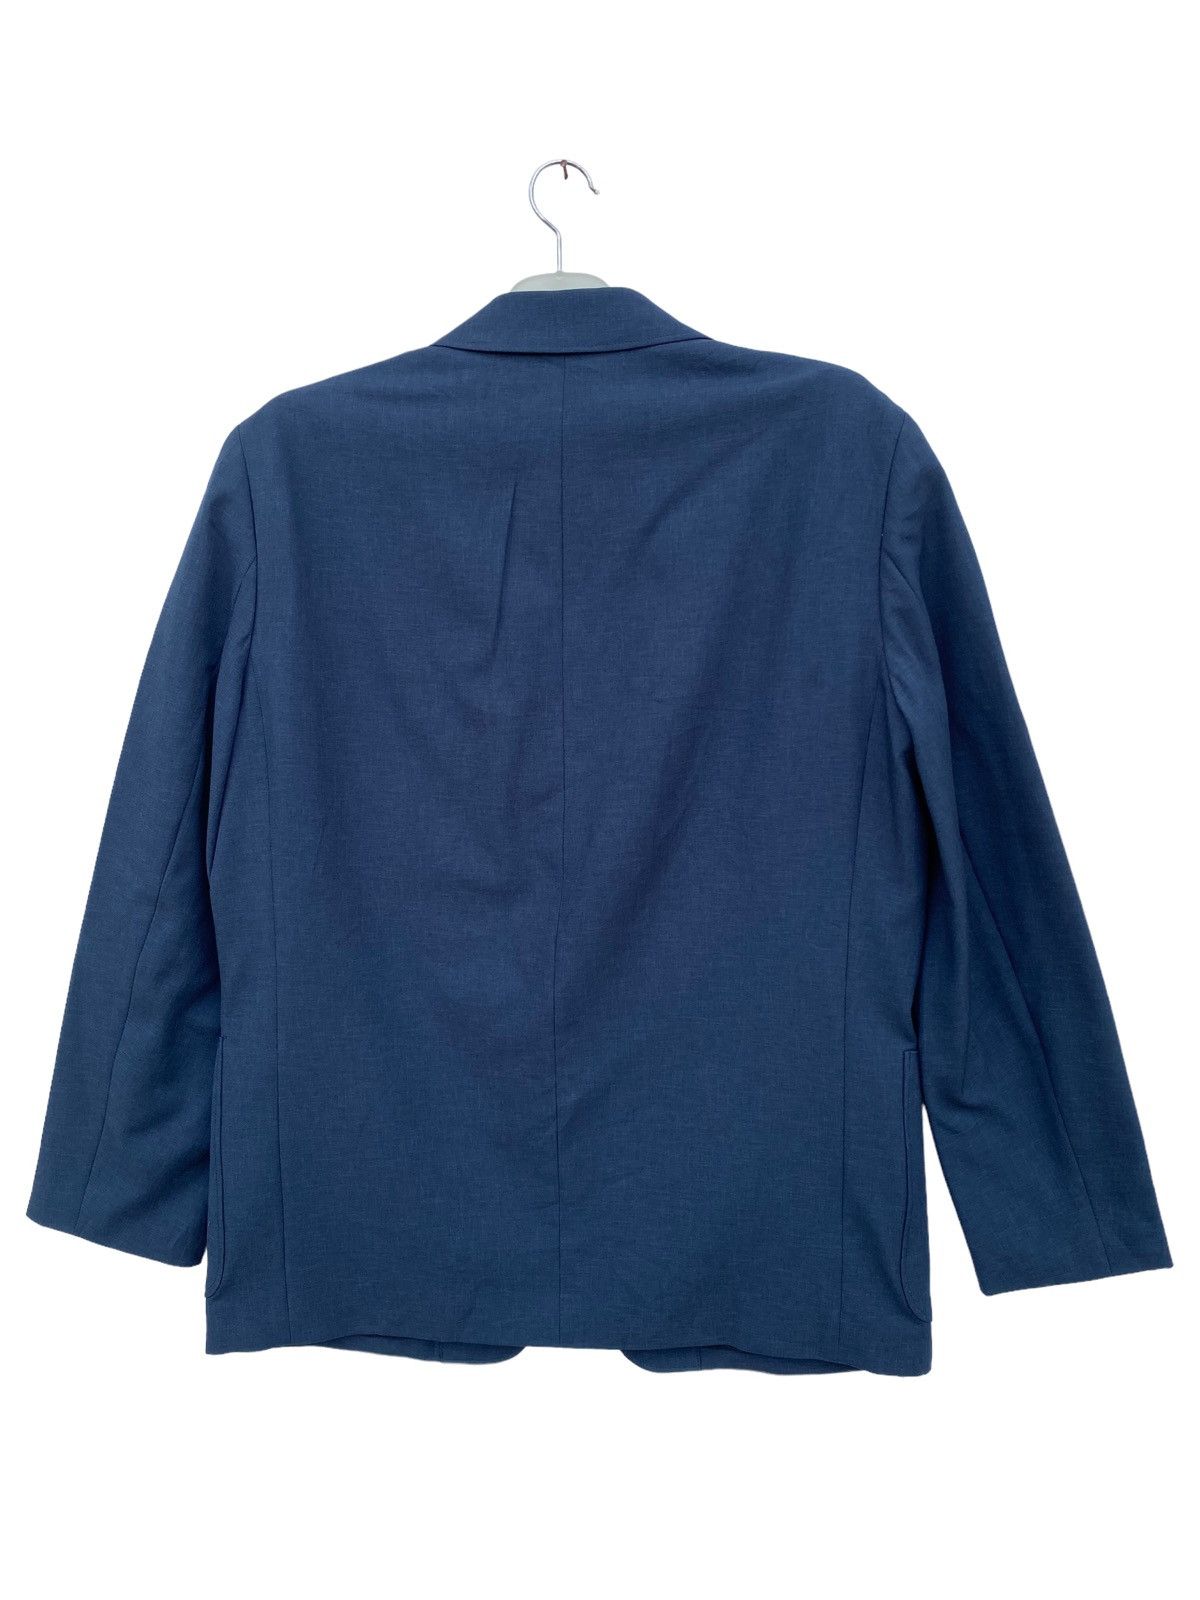 Uniqlo Lemaire Uniqlo Blazer Jacket Size 44R - 2 Preview